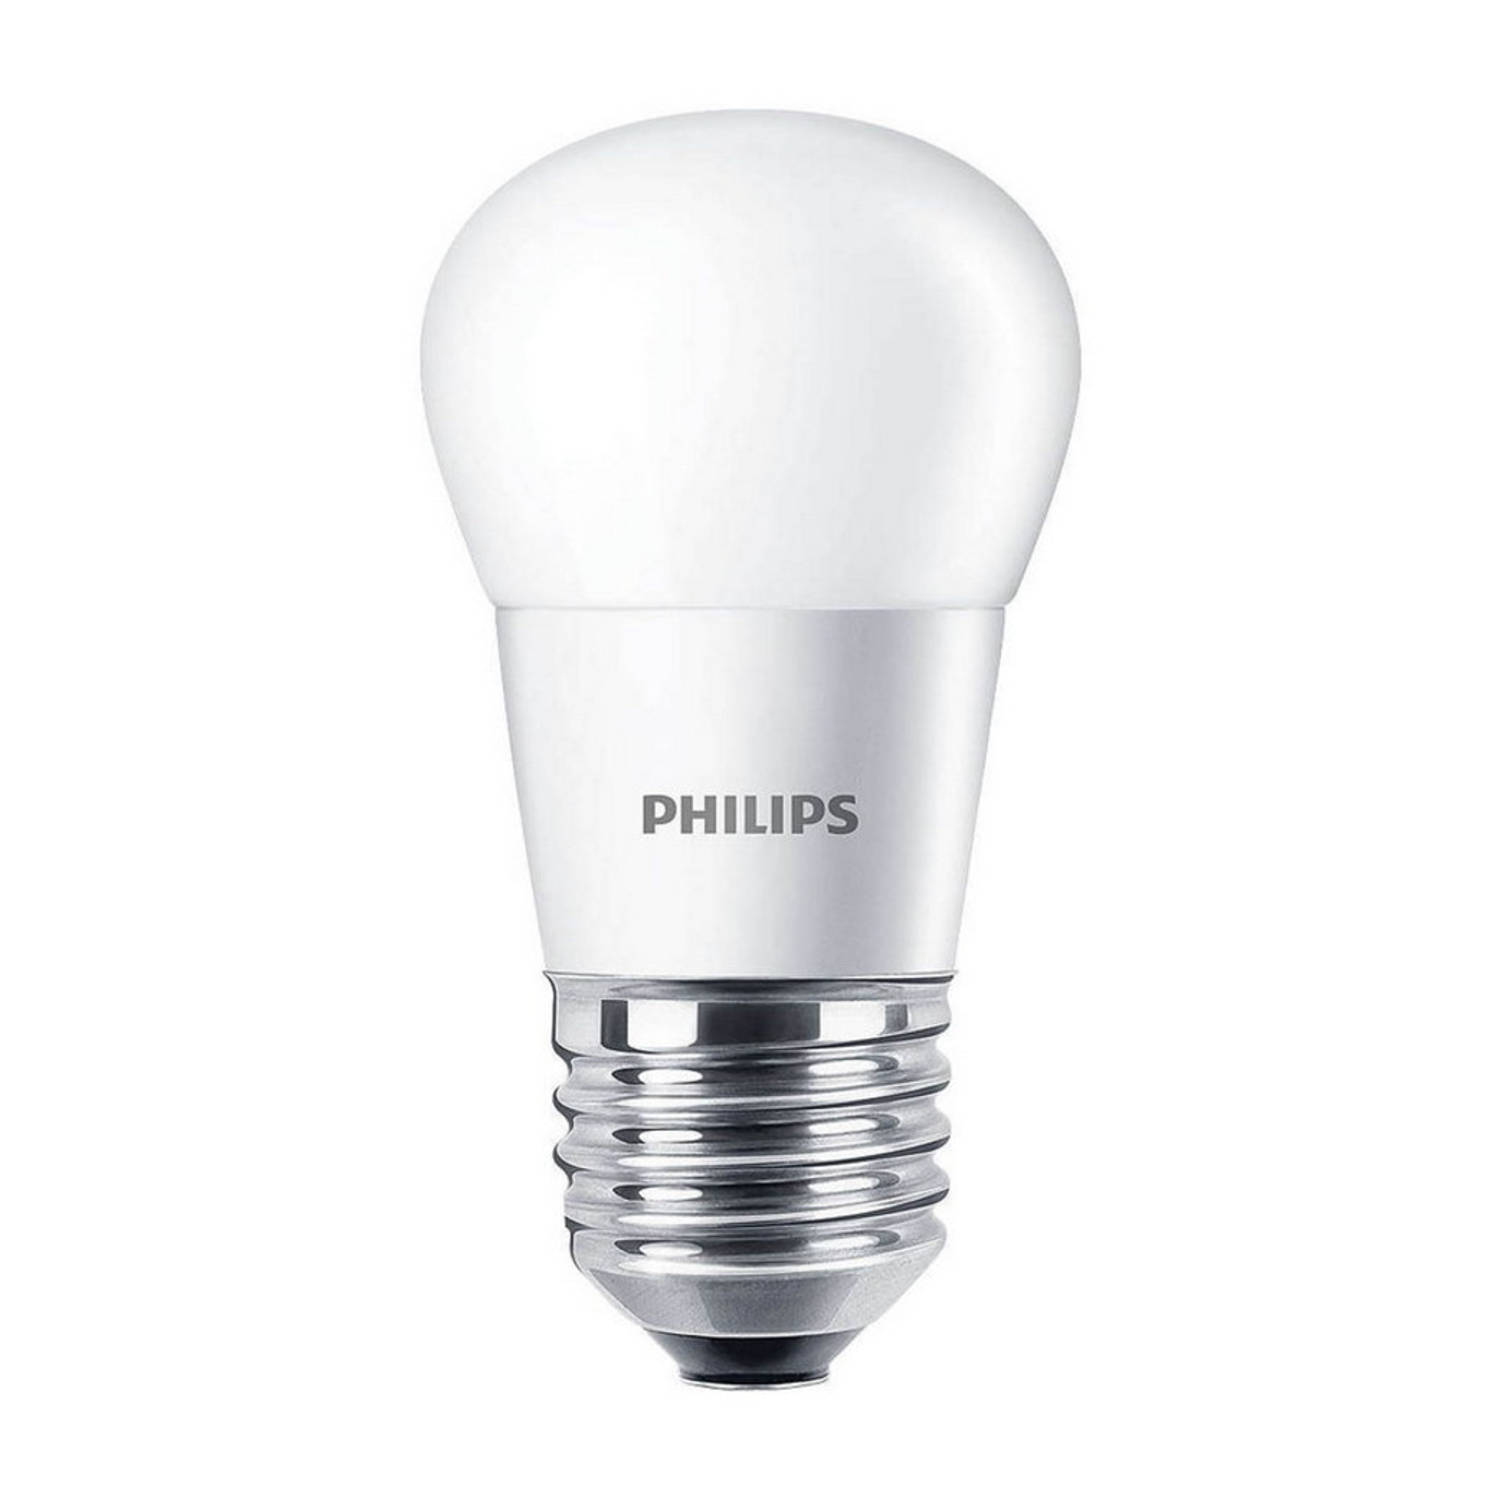 Philips Rex Led-lamp - E27 - 2700k Warm Wit Licht - 7 Watt - Niet Dimbaar